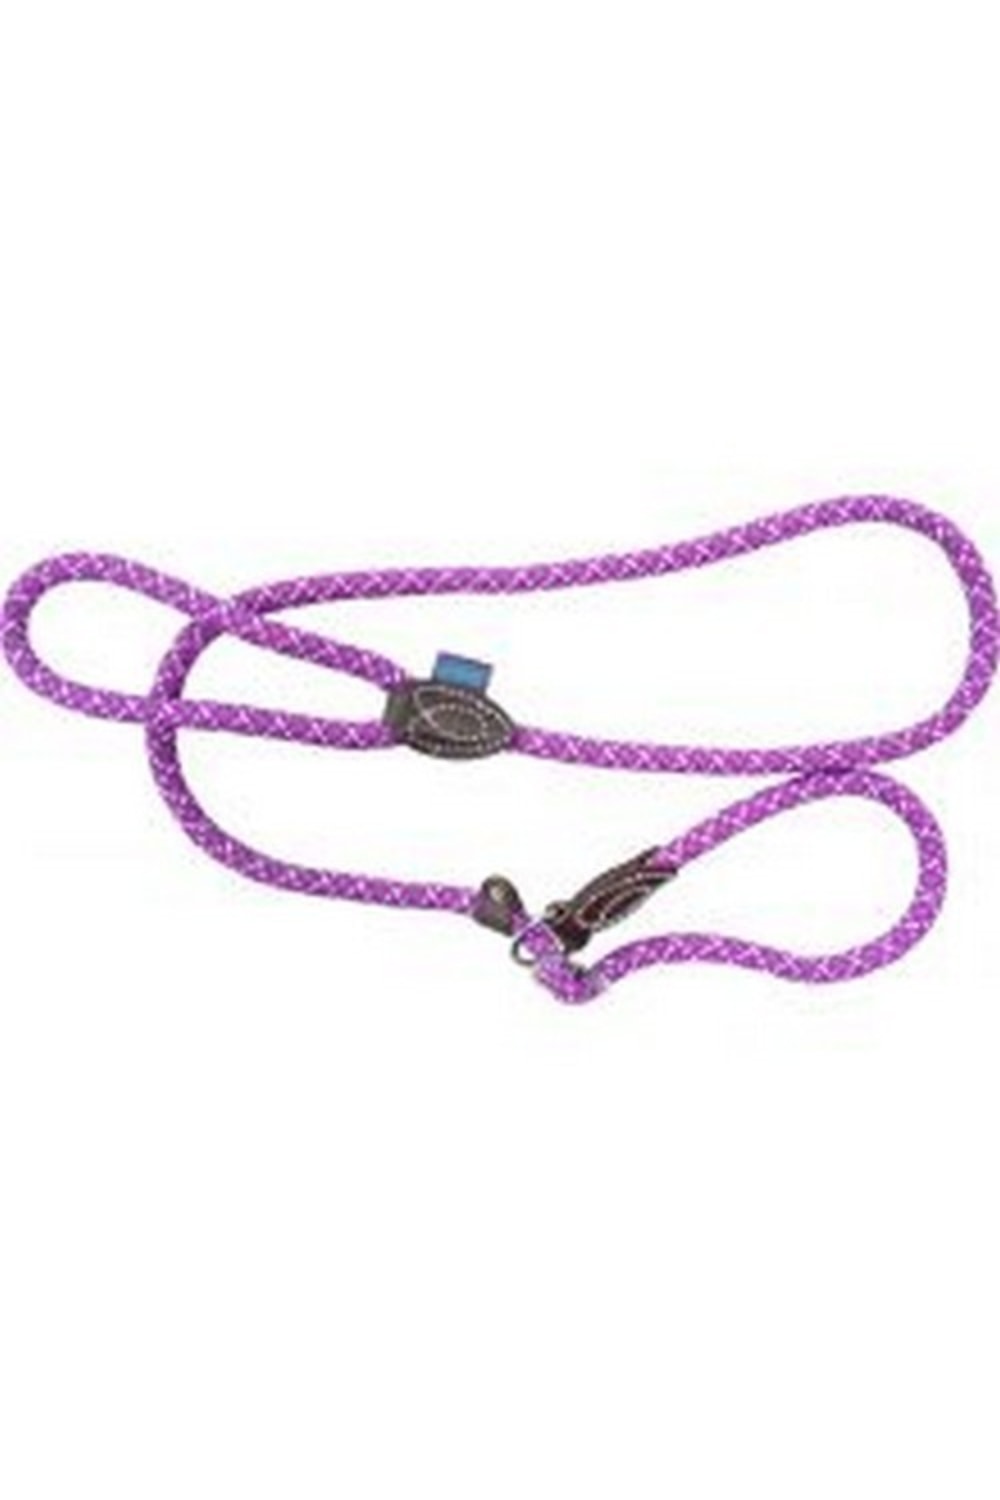 Hemm & Boo Sliplead Dog Rope (Purple/Mint) (60in)